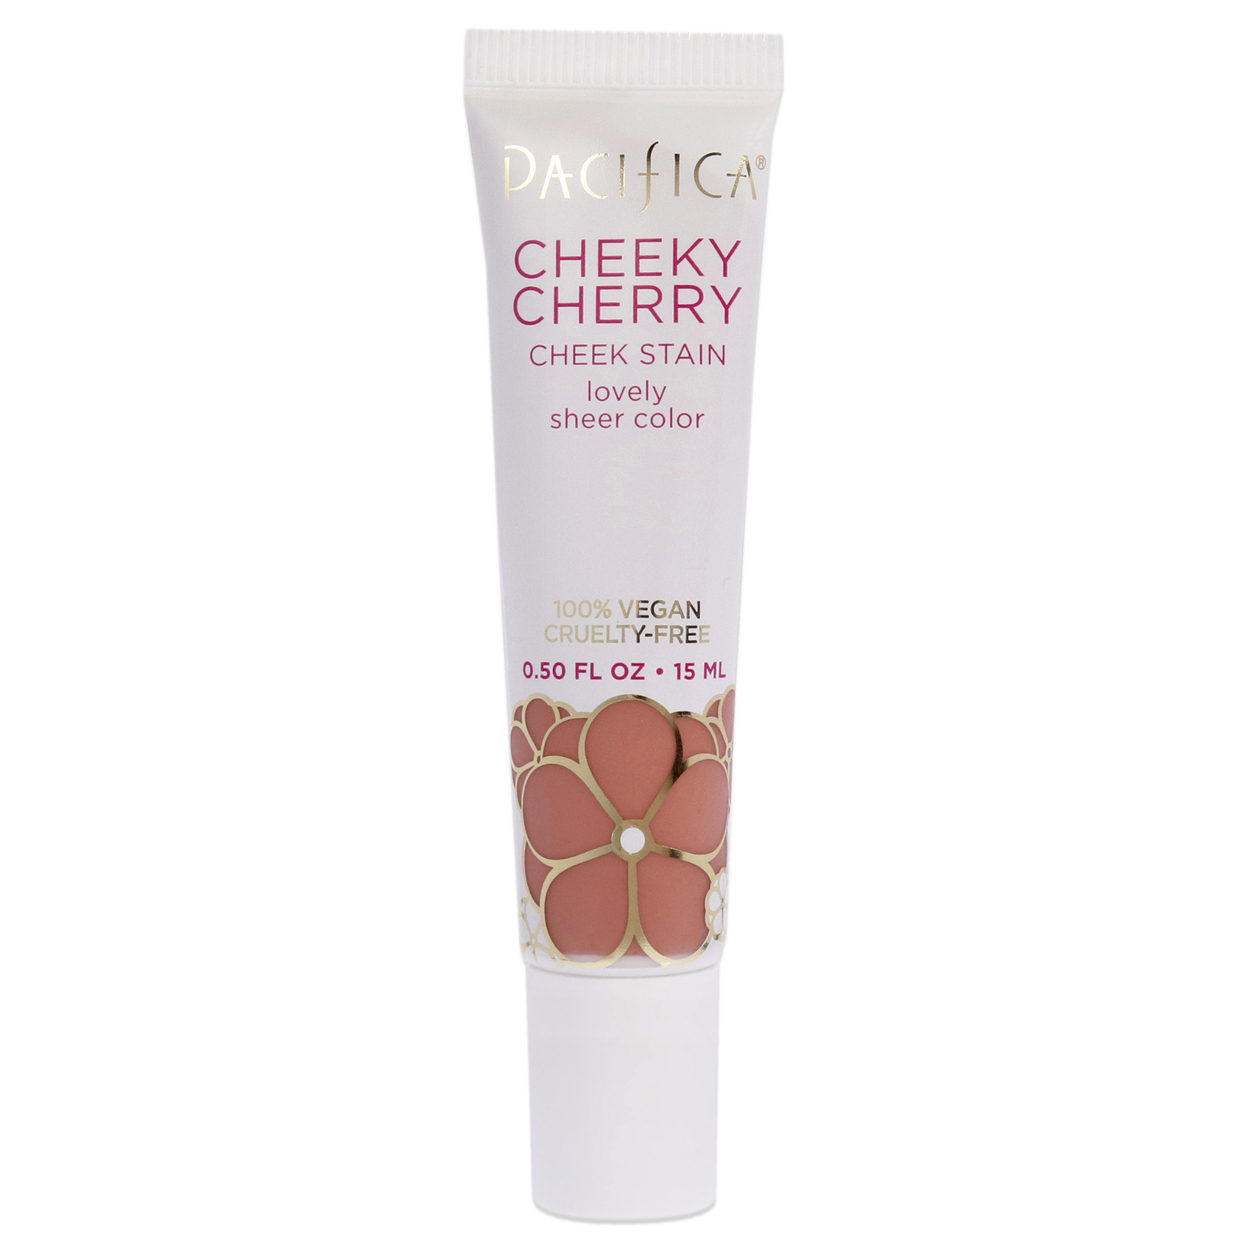 Pacifica Cheeky Cherry Cheek Stain - Cherry Baby Blush 0.50 Oz